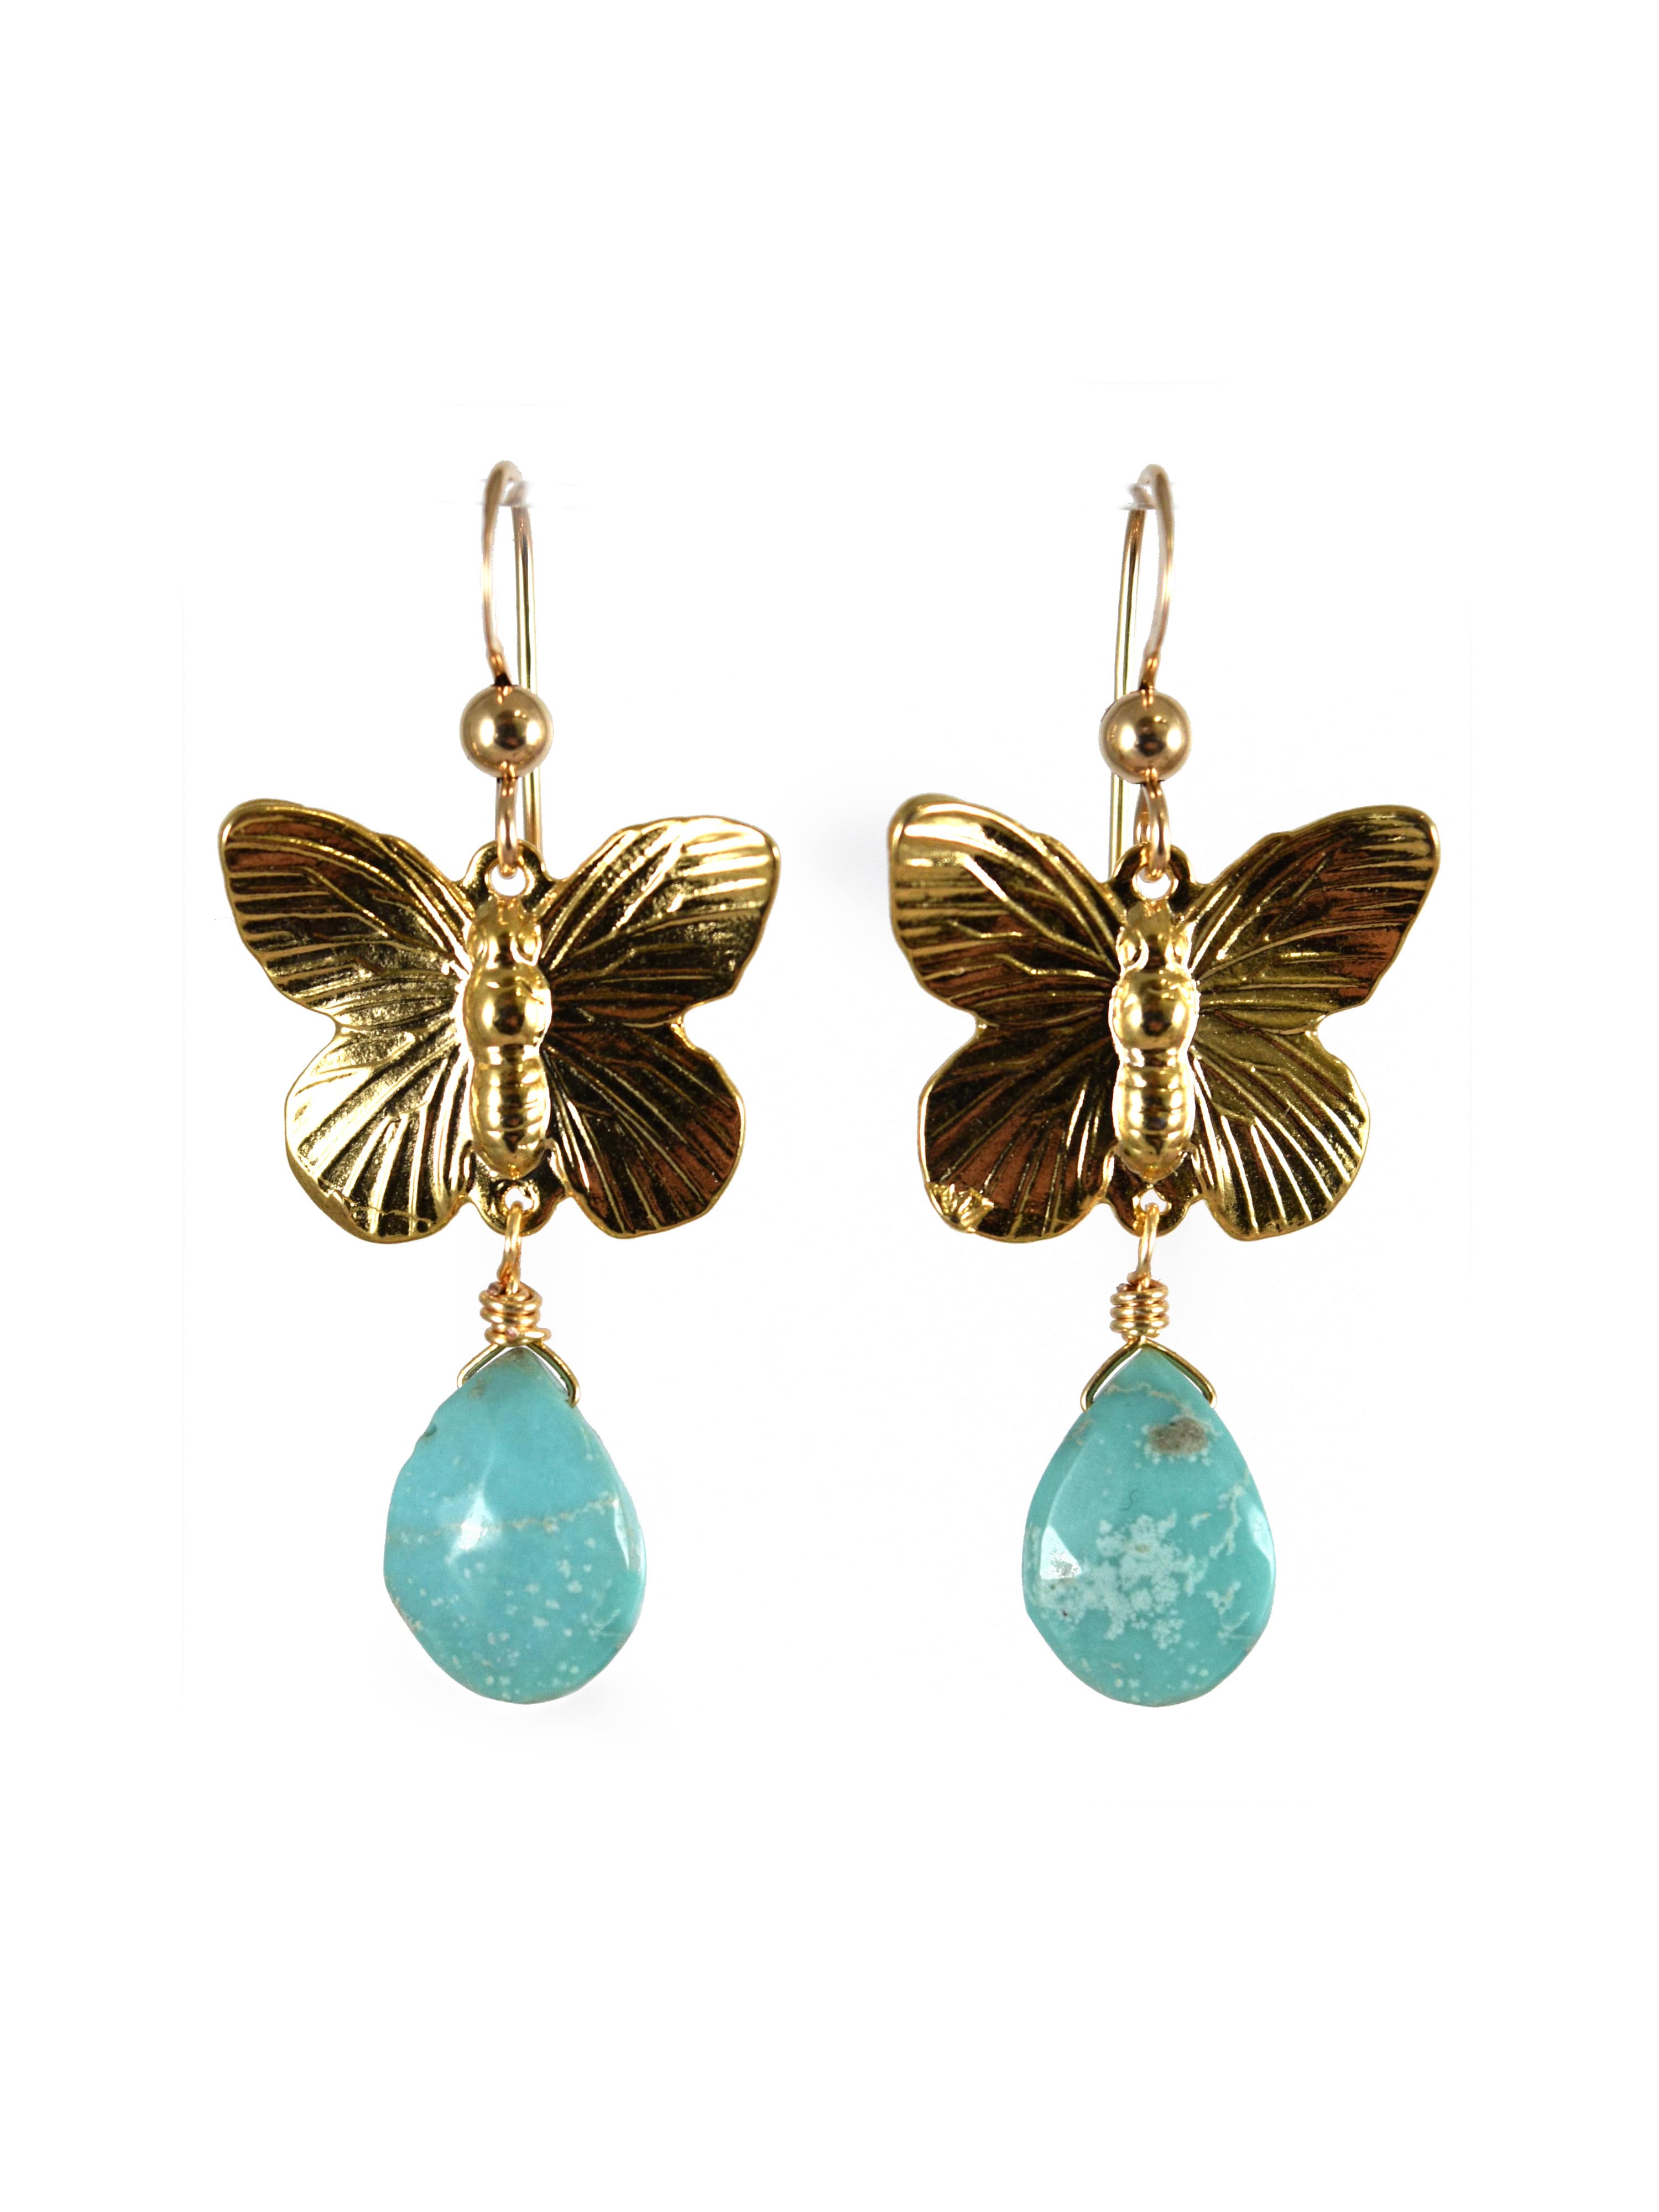 Butterfly Earrings in Turquoise